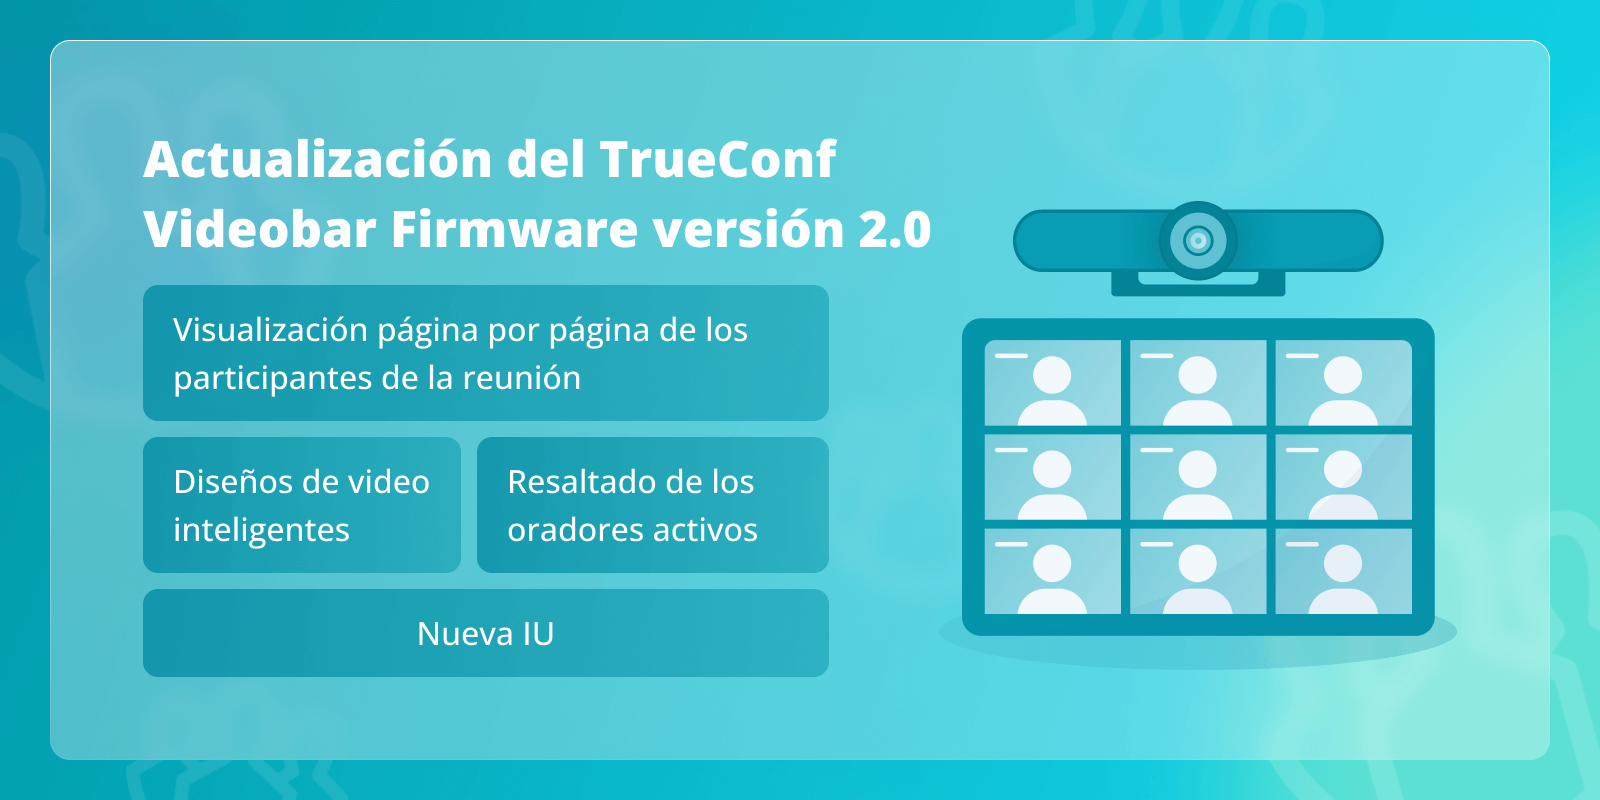 TrueConf Videobar 2.0: nueva interfaz de usuario (IU), resaltado de orador activo y más 1